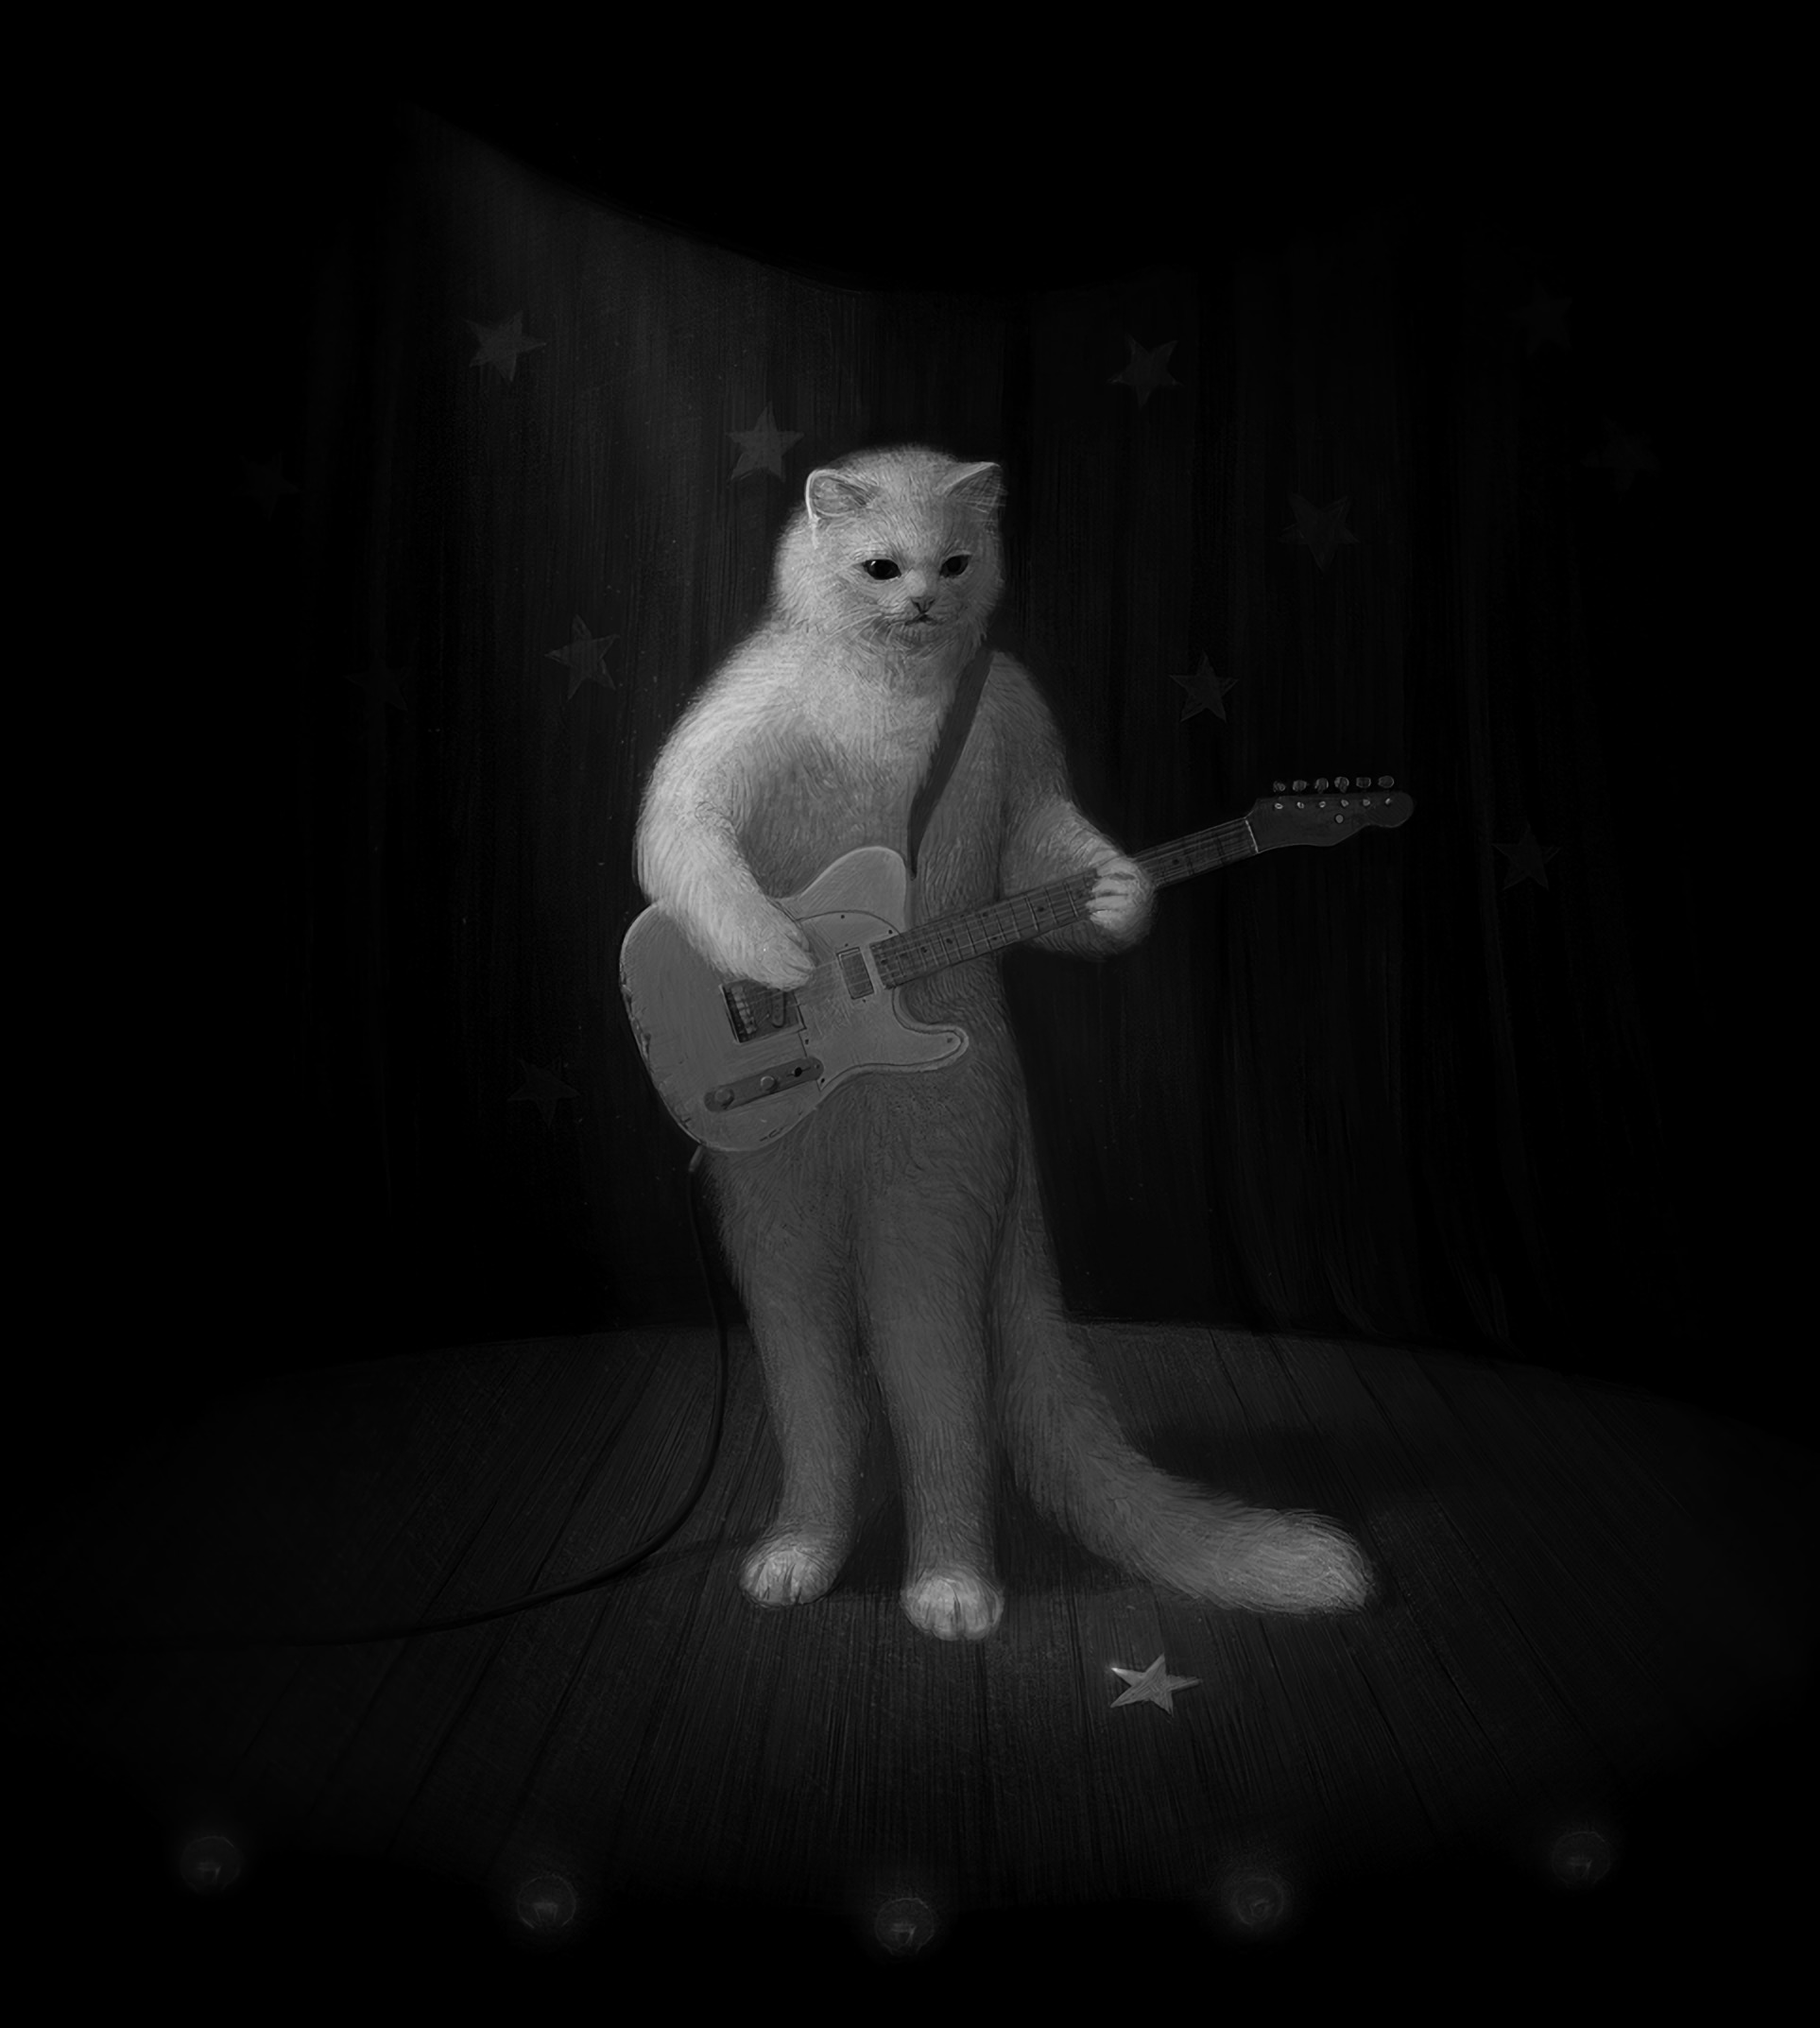 art, musician, bw, guitar, chb, cat